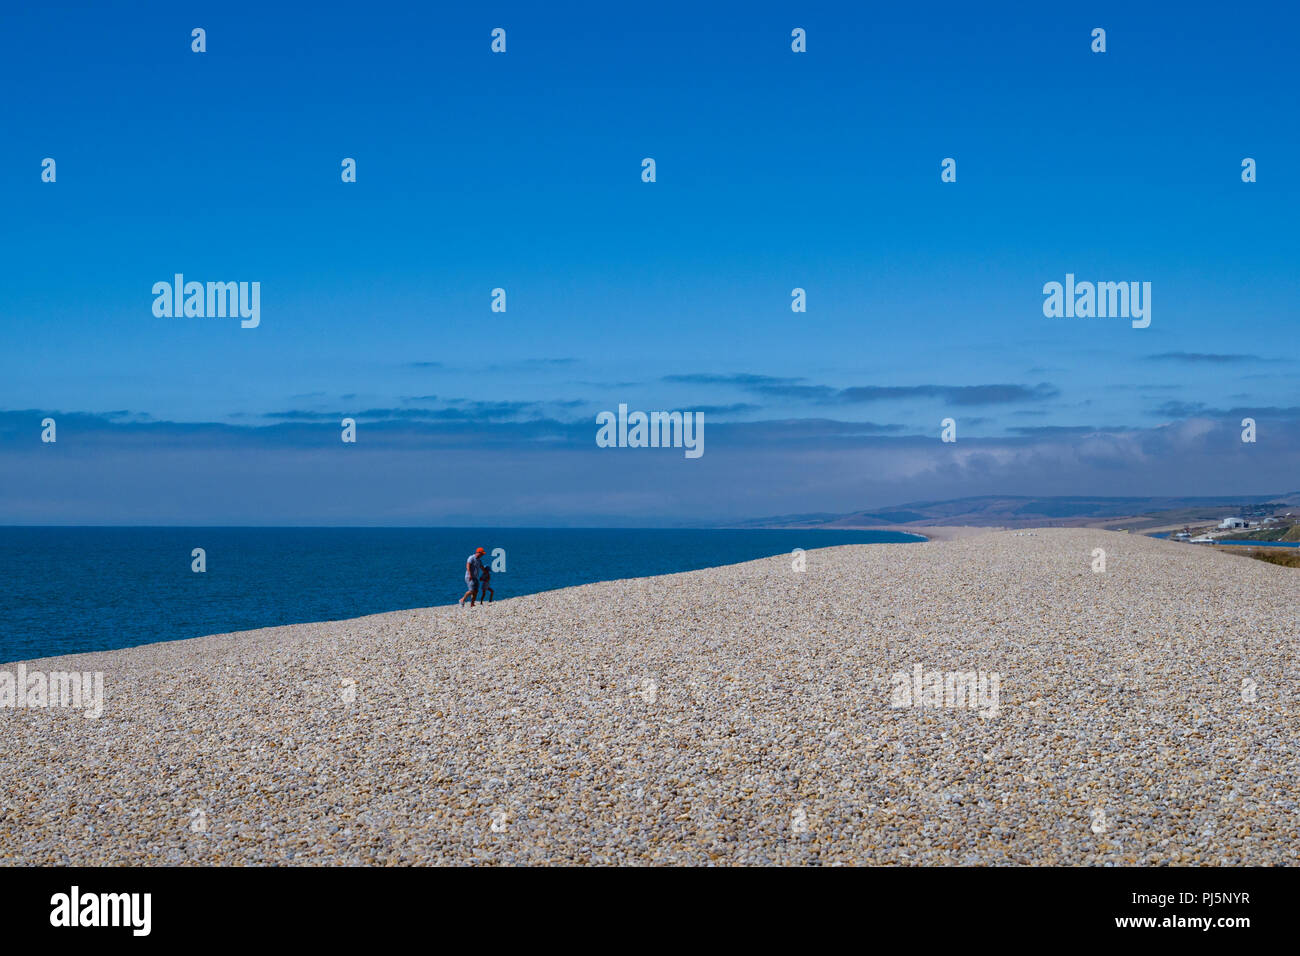 Grande longue étendue de plage de galets, plage de Chesil, sur la côte sud-ouest de l'Angleterre, Dorset, England, UK. Plage de Chesil est un paysage populaire attracti Banque D'Images